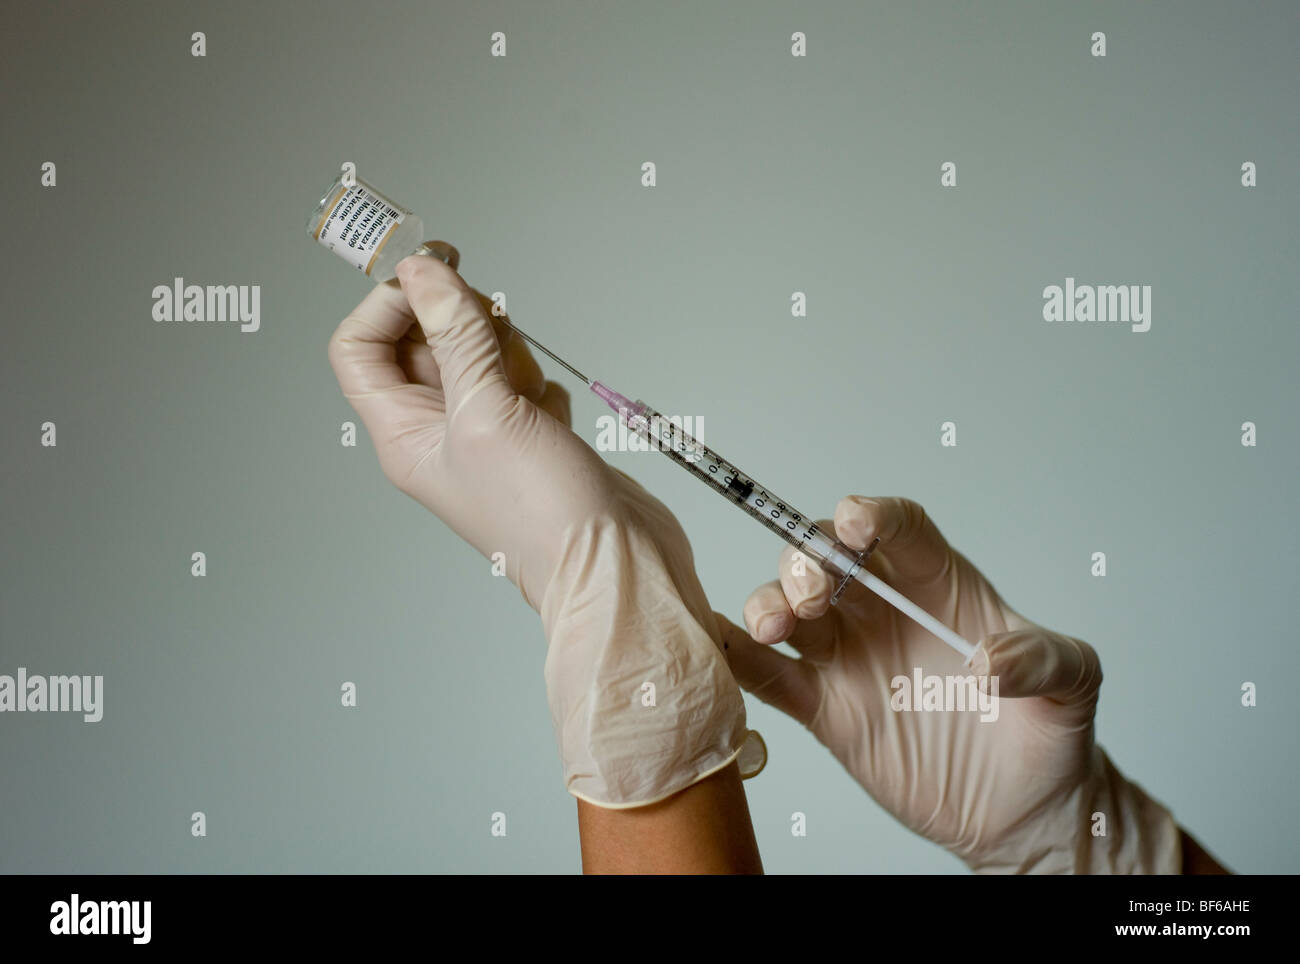 Preparazione di infermiere suina vaccino antinfluenzale Foto Stock